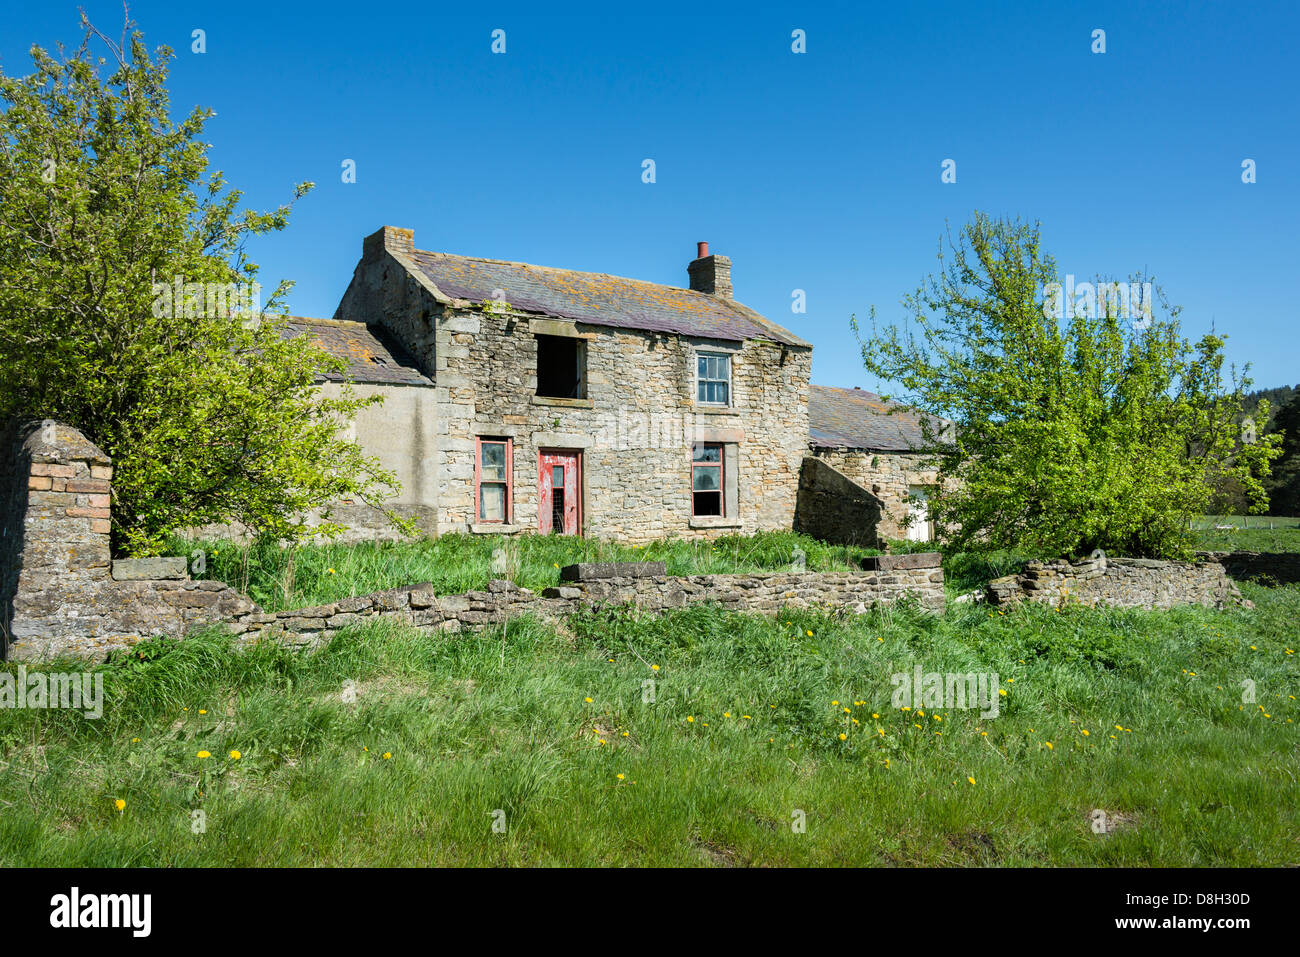 Zerstörten Haus - diese Ruine ist von vielen verlassenen Gebäude/Hütte/Bauernhaus liegen verlassenen in der englischen Landschaft Stockfoto